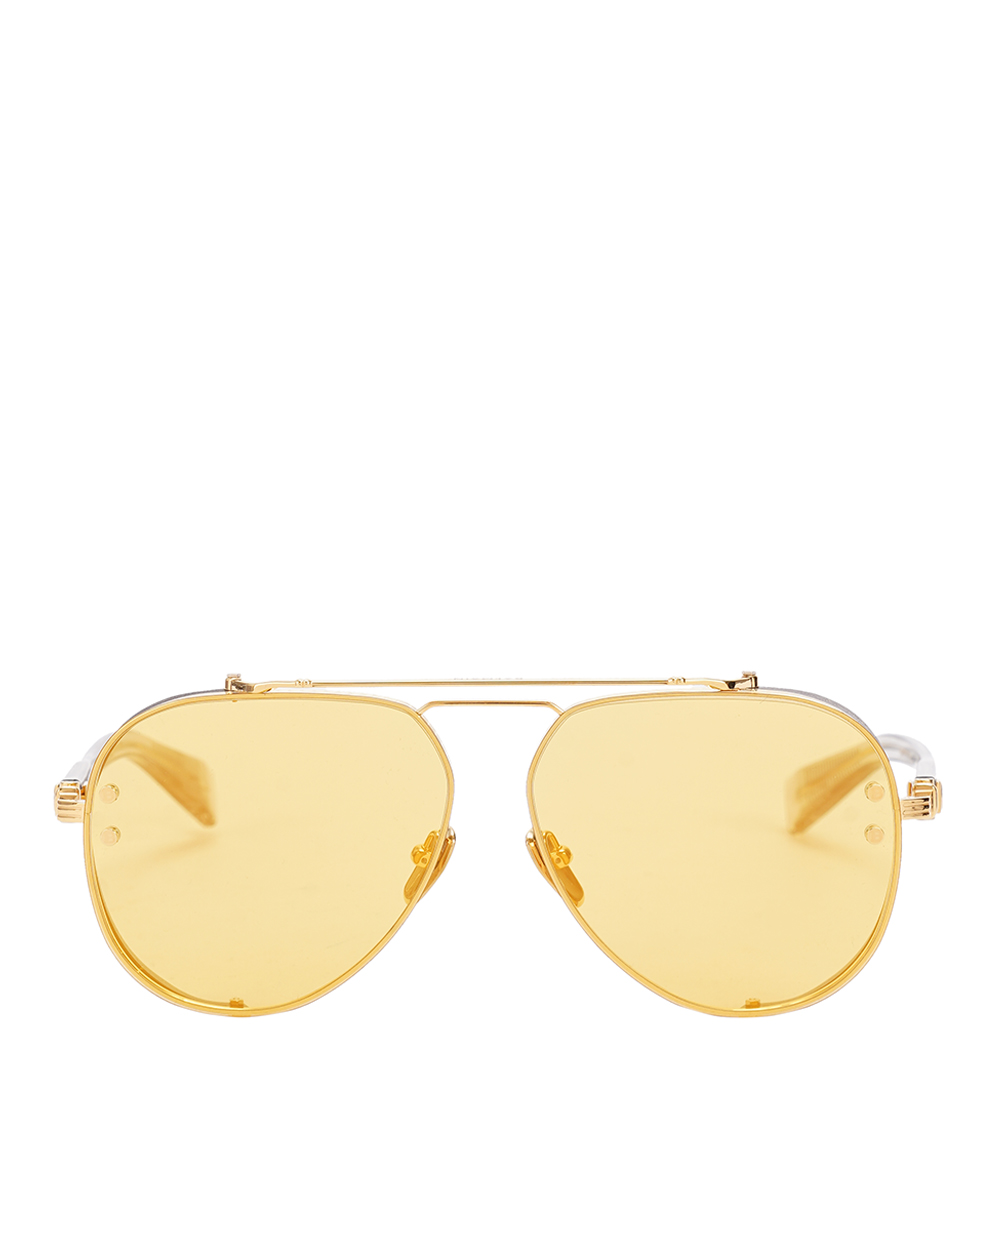 Солнцезащитные очки Capitaine Balmain BPS-125D-62, желтый цвет • Купить в интернет-магазине Kameron